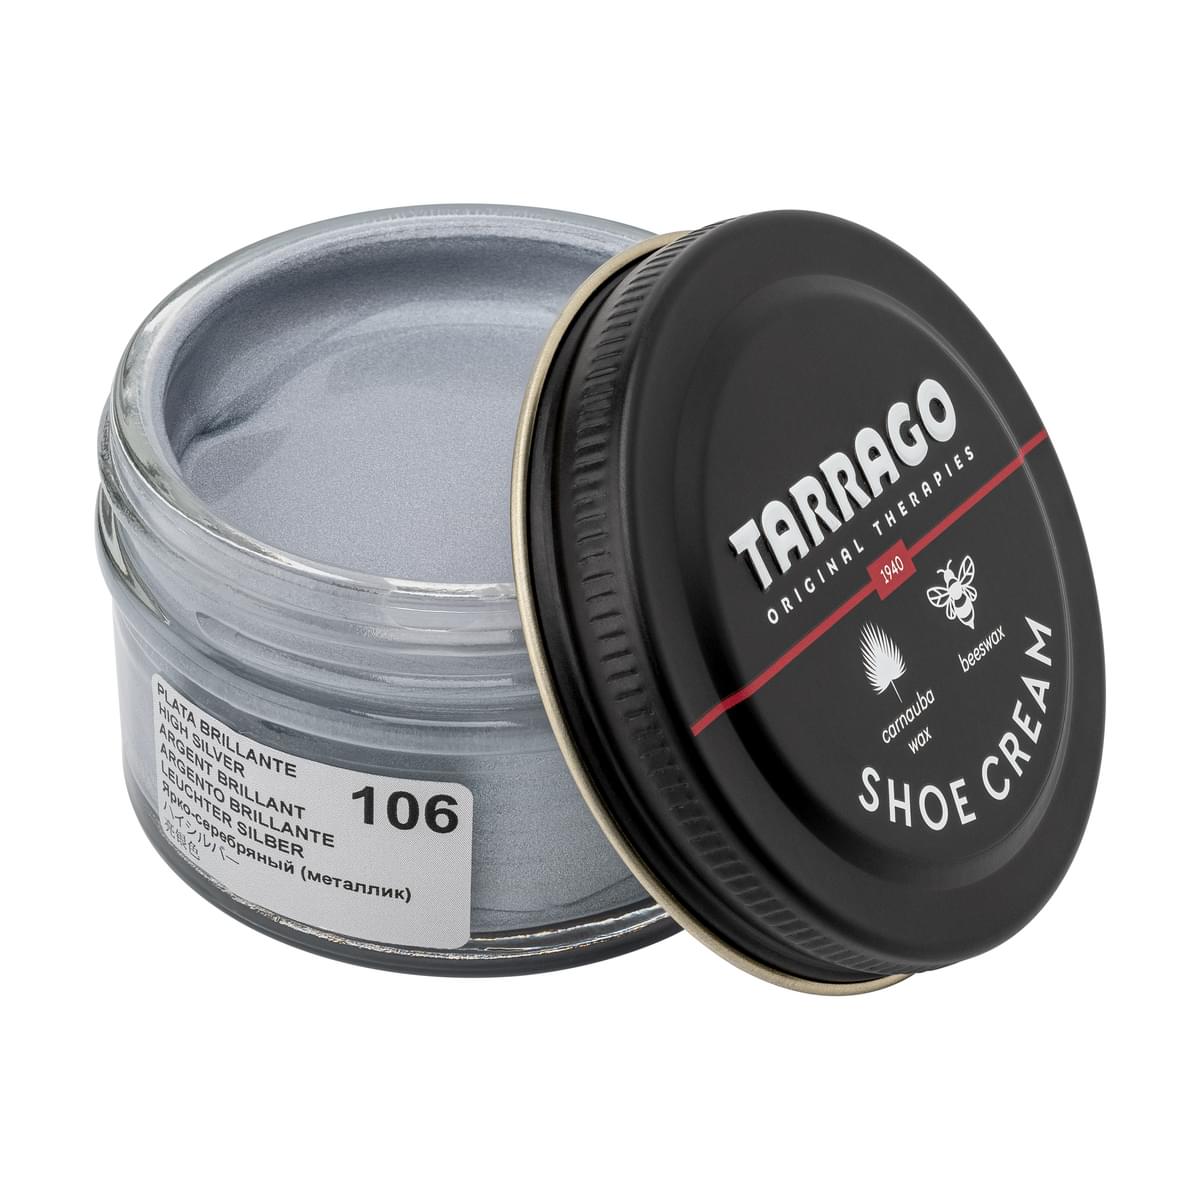 Tarrago Shoe Cream  - High Silver - 106